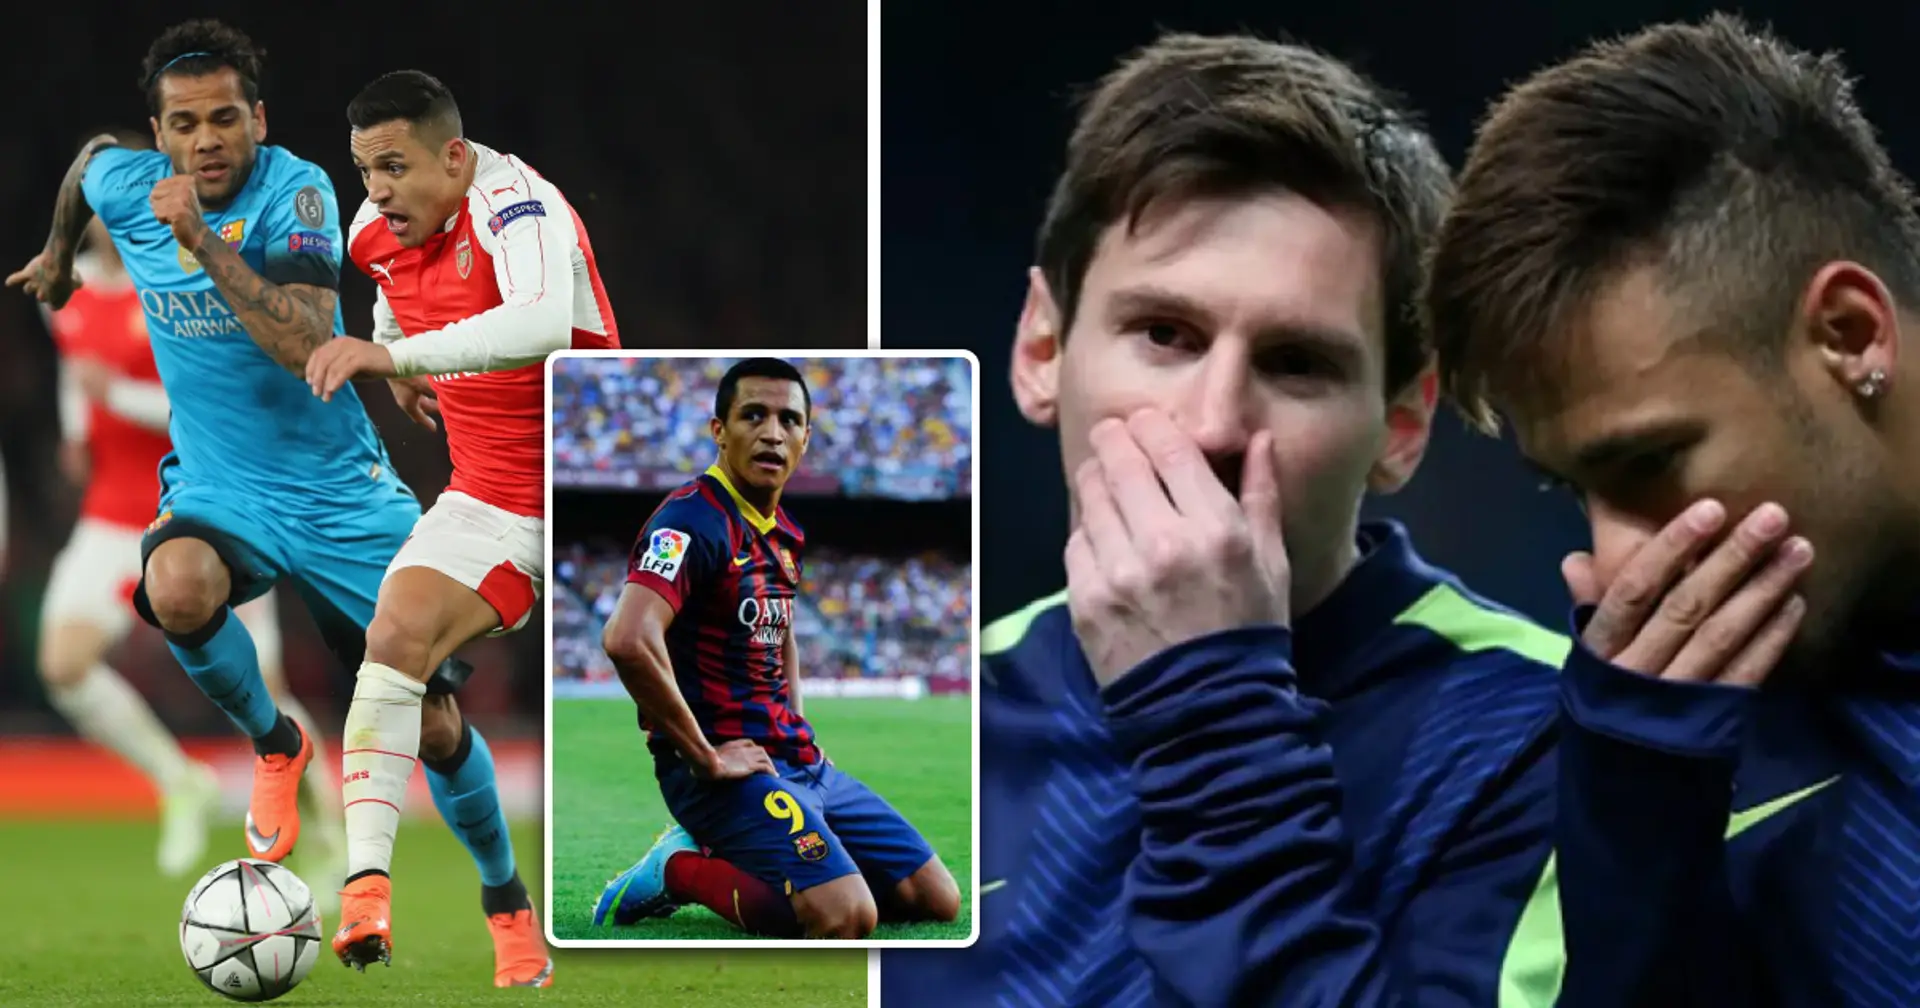 "Es reicht nicht, nur ein Biest zu sein": Dani Alves erklärt, warum Sanchez nicht zu Barcelona passte